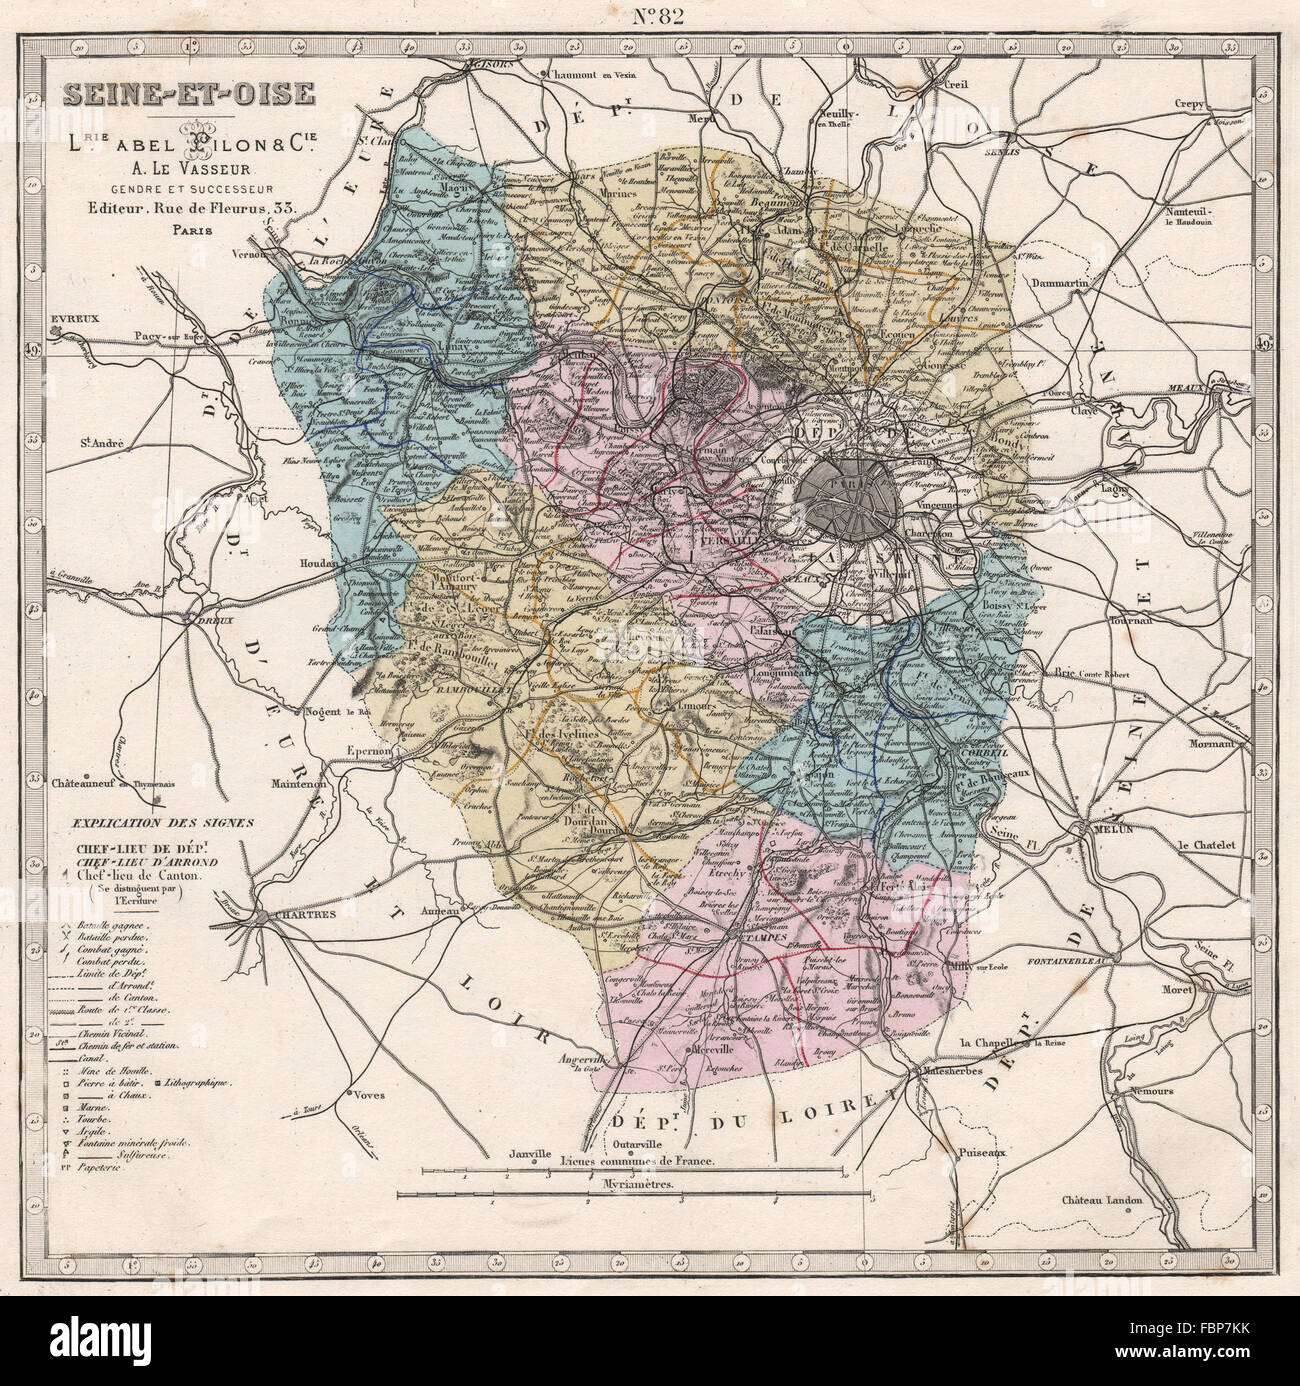 SEINE-ET-OISE Abteilung. Schlachten/Termine Ressourcen Mineralien. LE VASSEUR, 1876-Karte Stockfoto